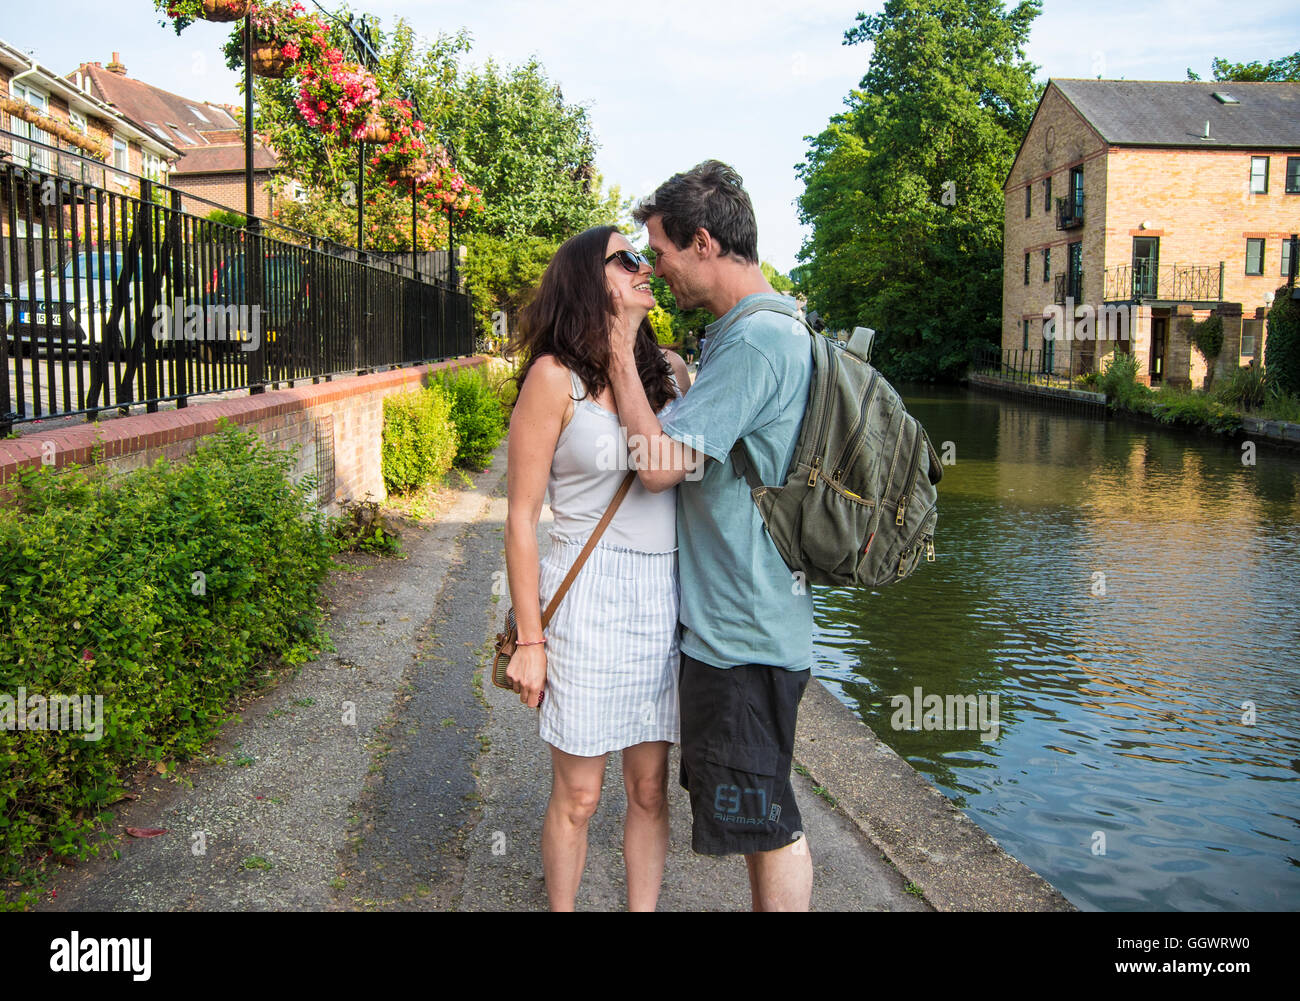 Coppia romantica accanto al Grand Union Canal - Berkhamsted, Regno Unito Foto Stock